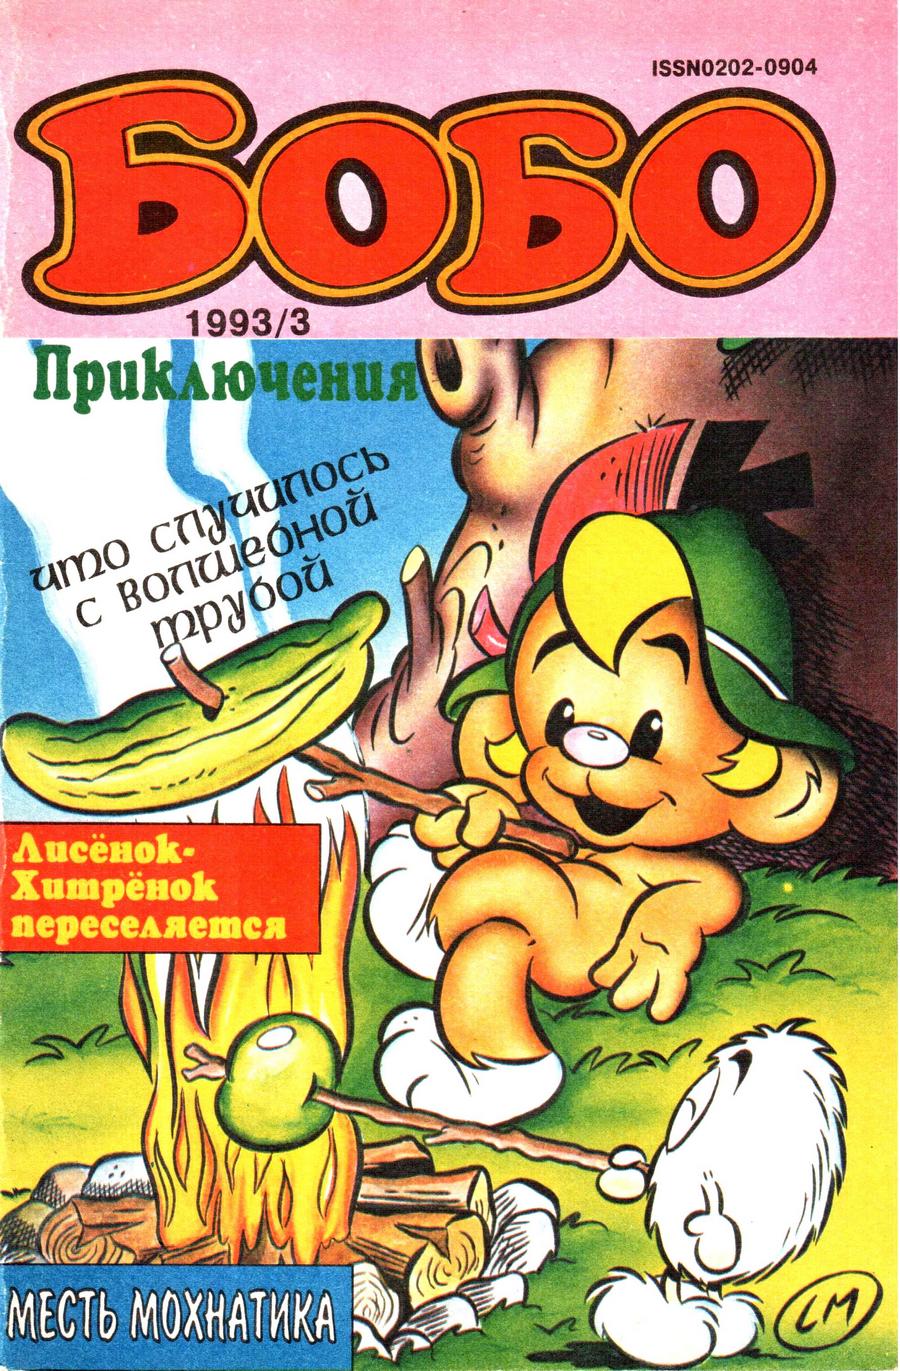 Комикс Бобо #3-1993